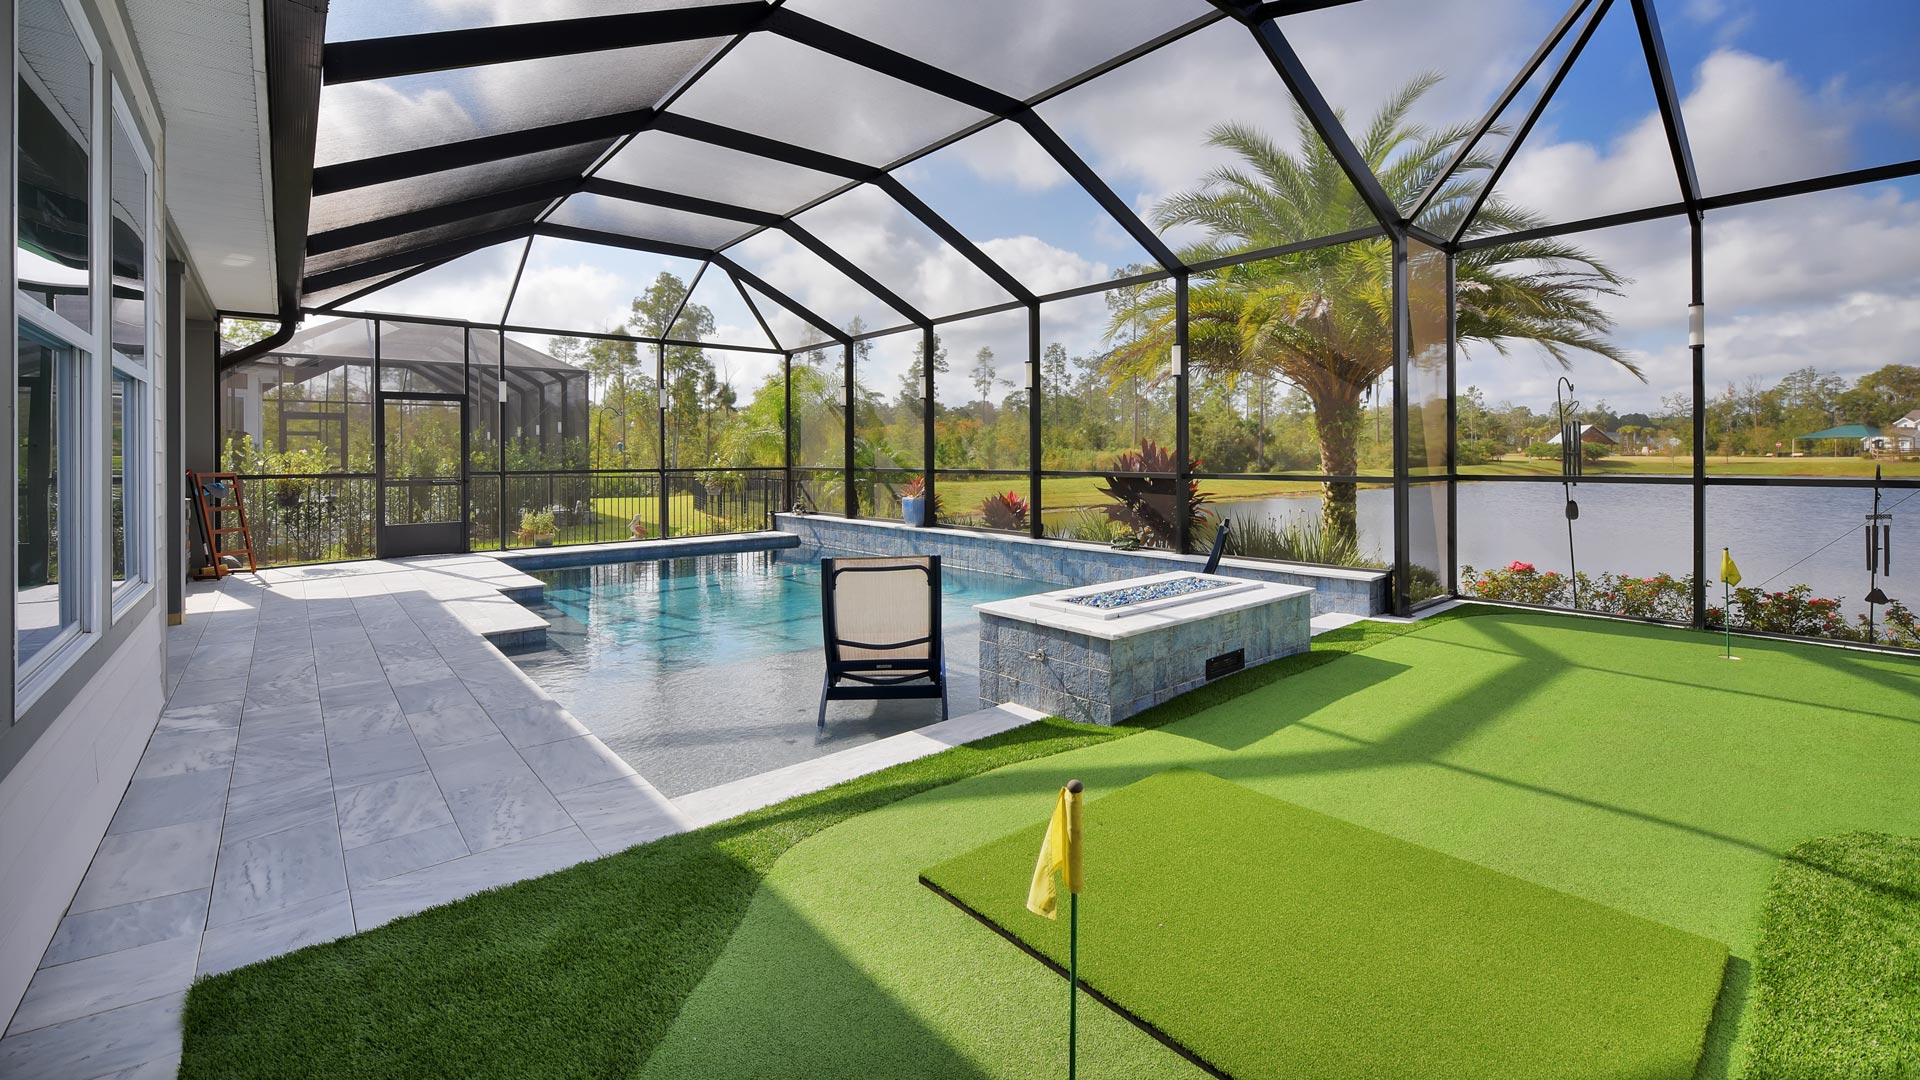 pool and putting green in backyard